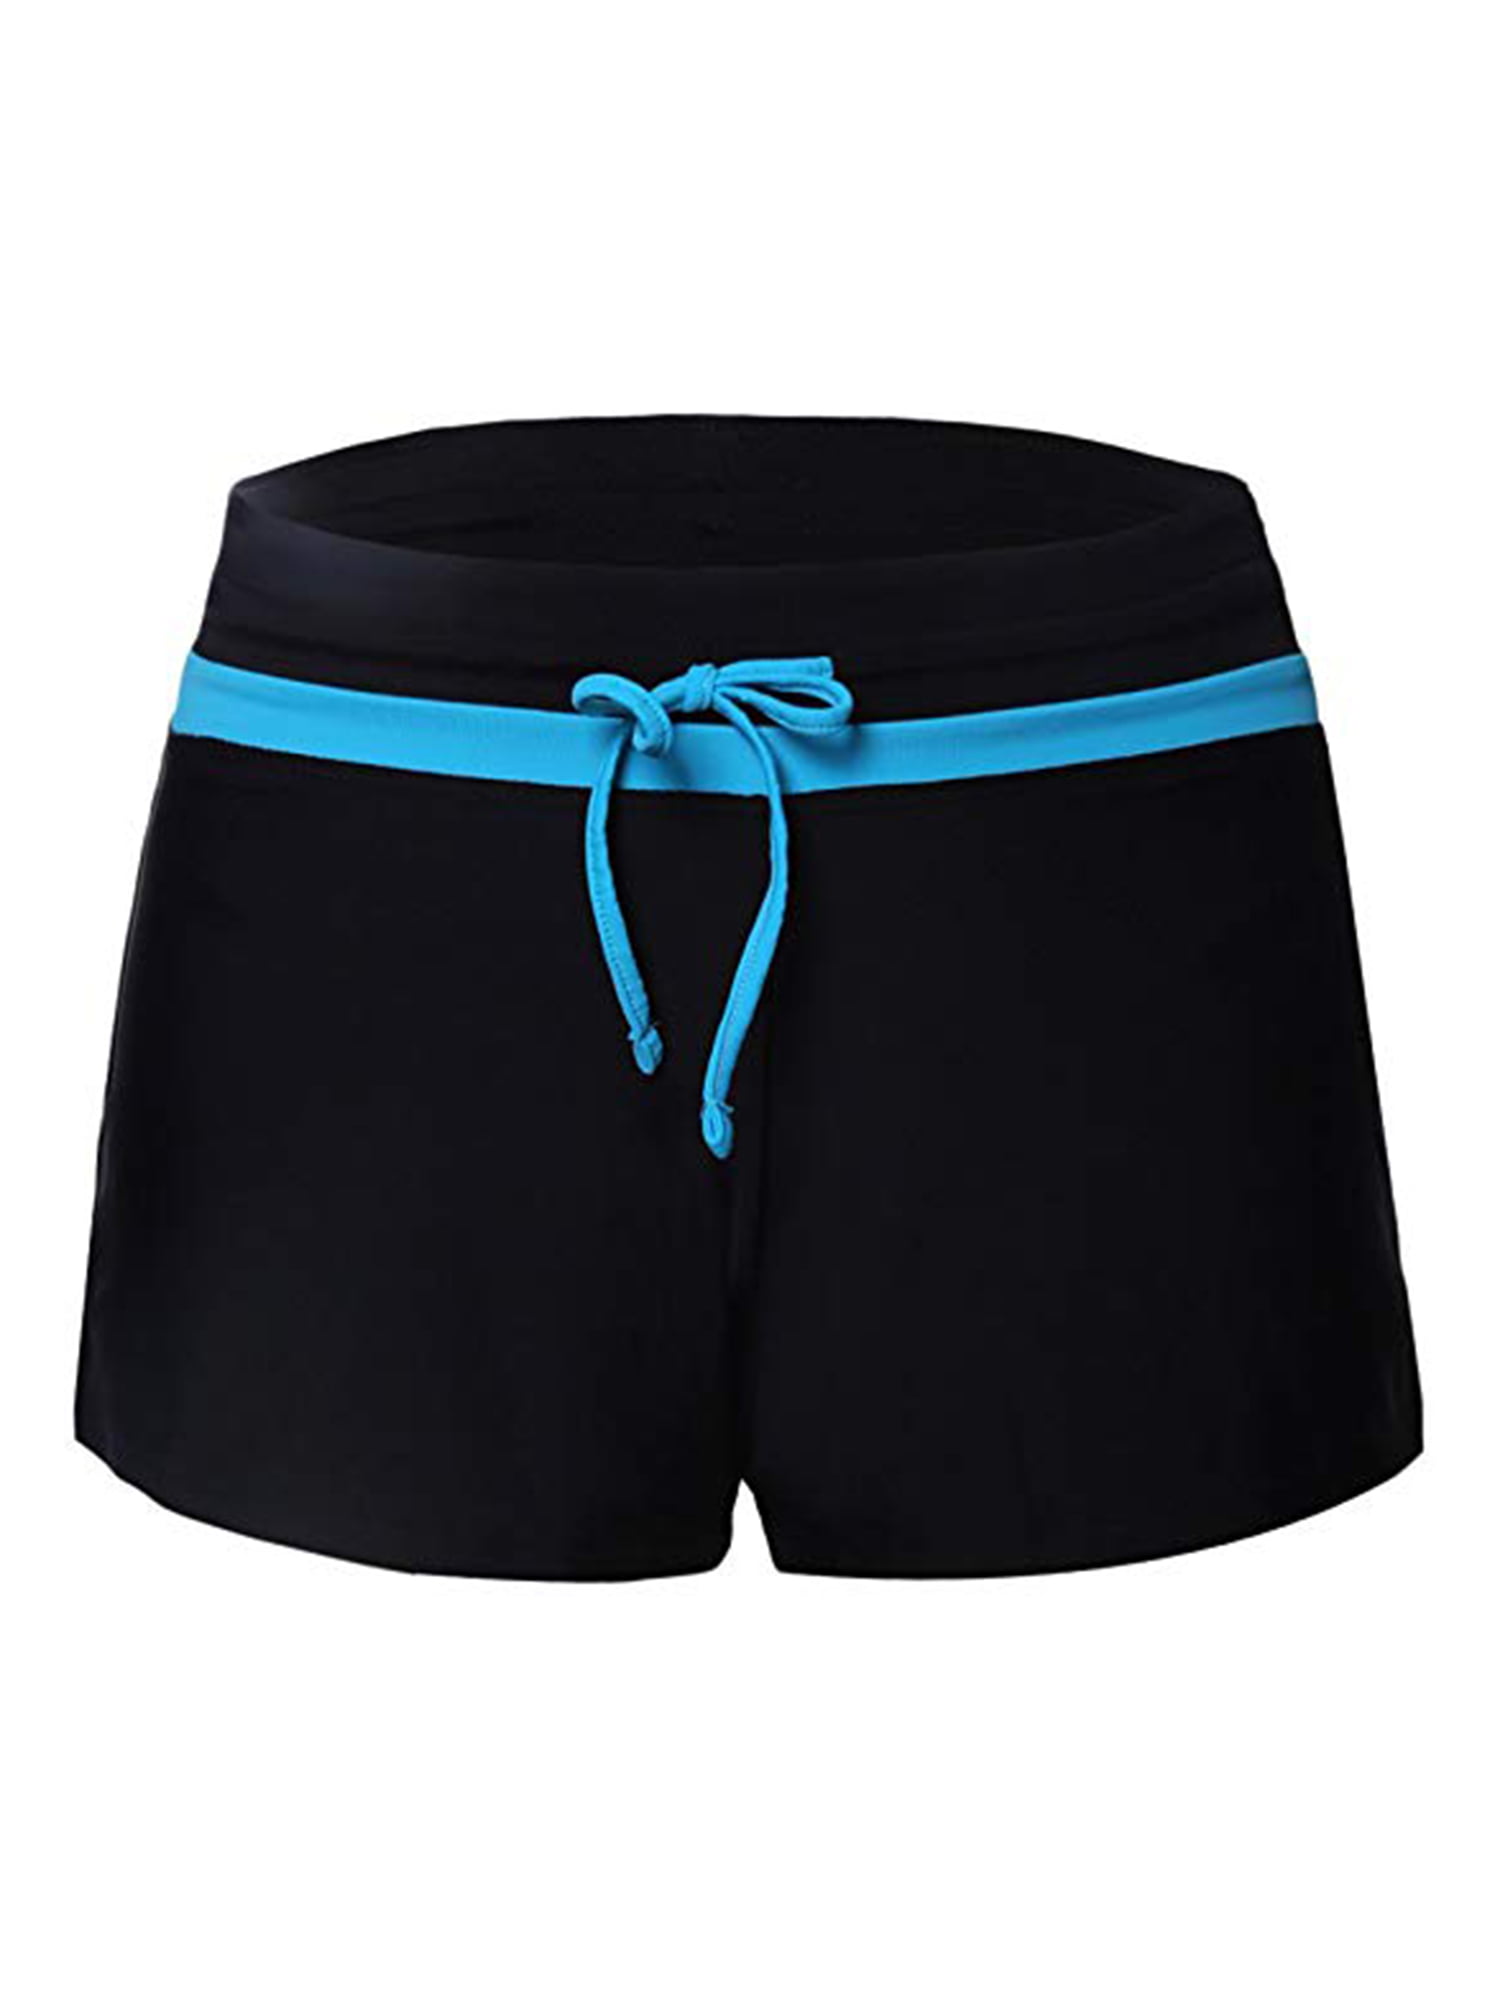 SAYFUT Women's Fashion Adjustable Waistband Swimsuit Bottom Boy Shorts  Swimming Panty Bathing Suits Plus Size 